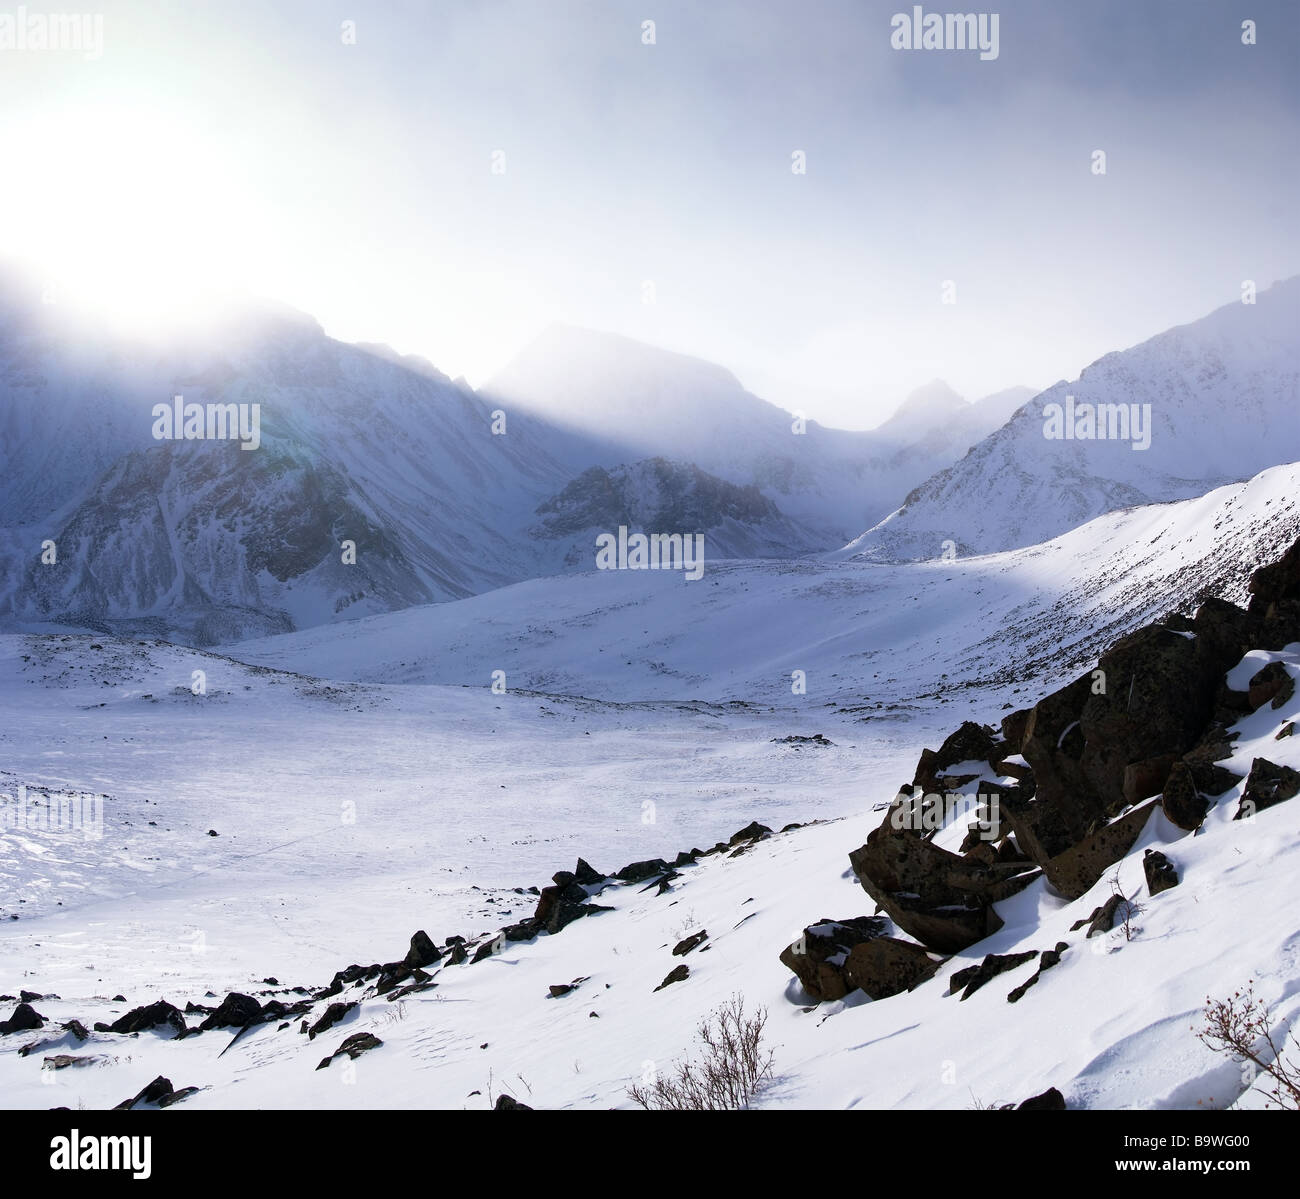 The Altai Mountains.Eastern Sayan. Stock Photo